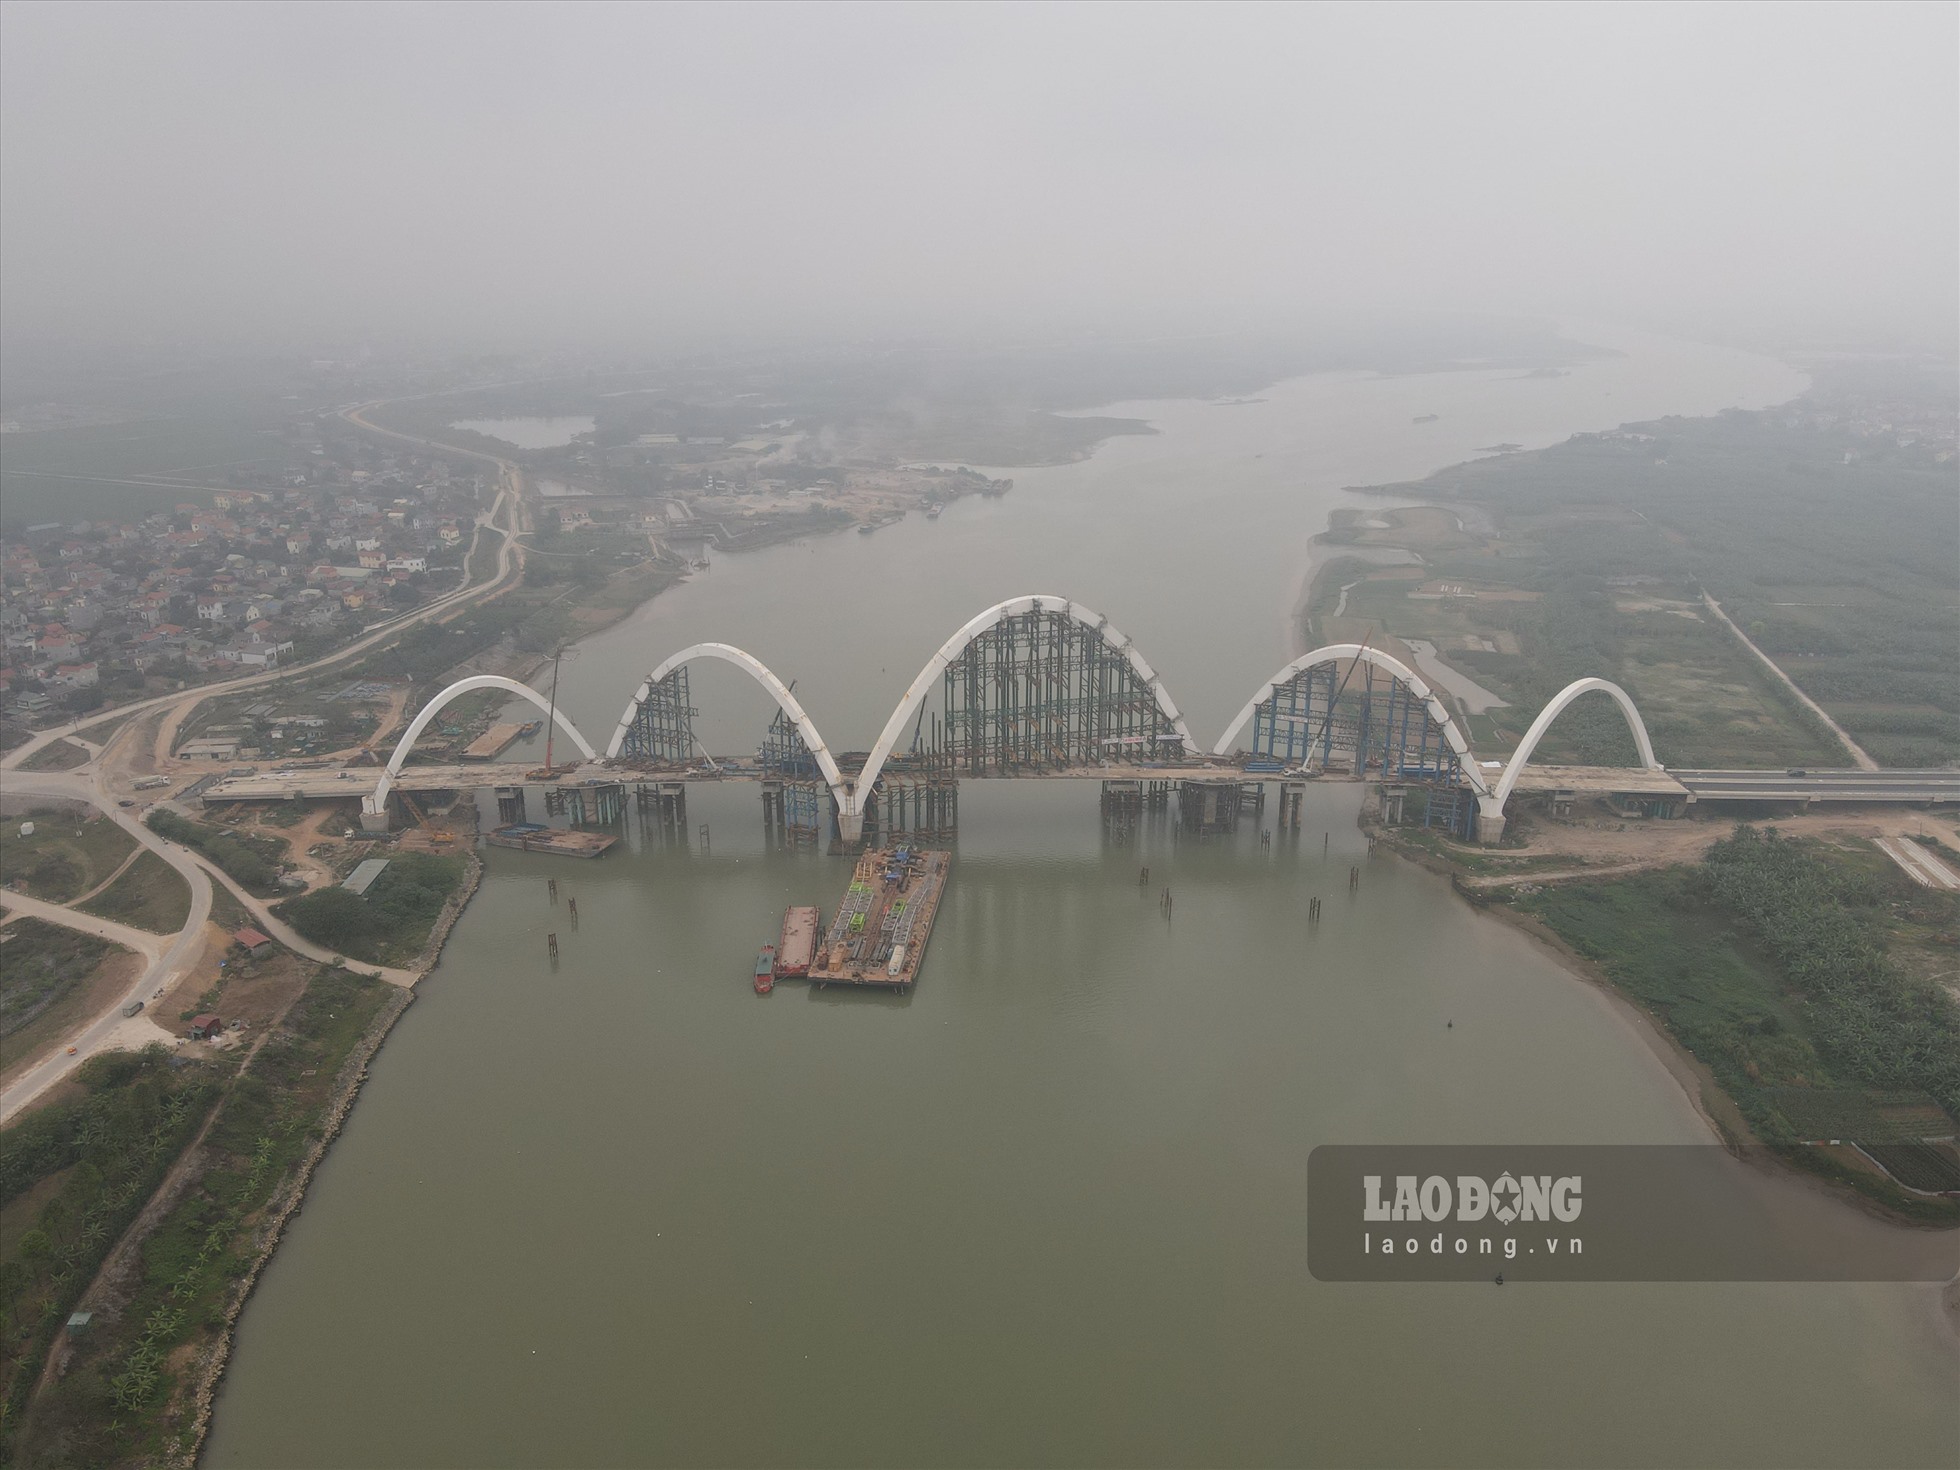 Công trường thi công ầu Phật Tích - Đại Đồng Thành (cầu Phật Tích) bắc qua sông Đuống có chiều dài hơn 1,5 km với tổng kinh phí hơn 1.900 tỷ đồng. Dự án được khởi công vào tháng 1.2018 và hợp long vào 30.6.2022.